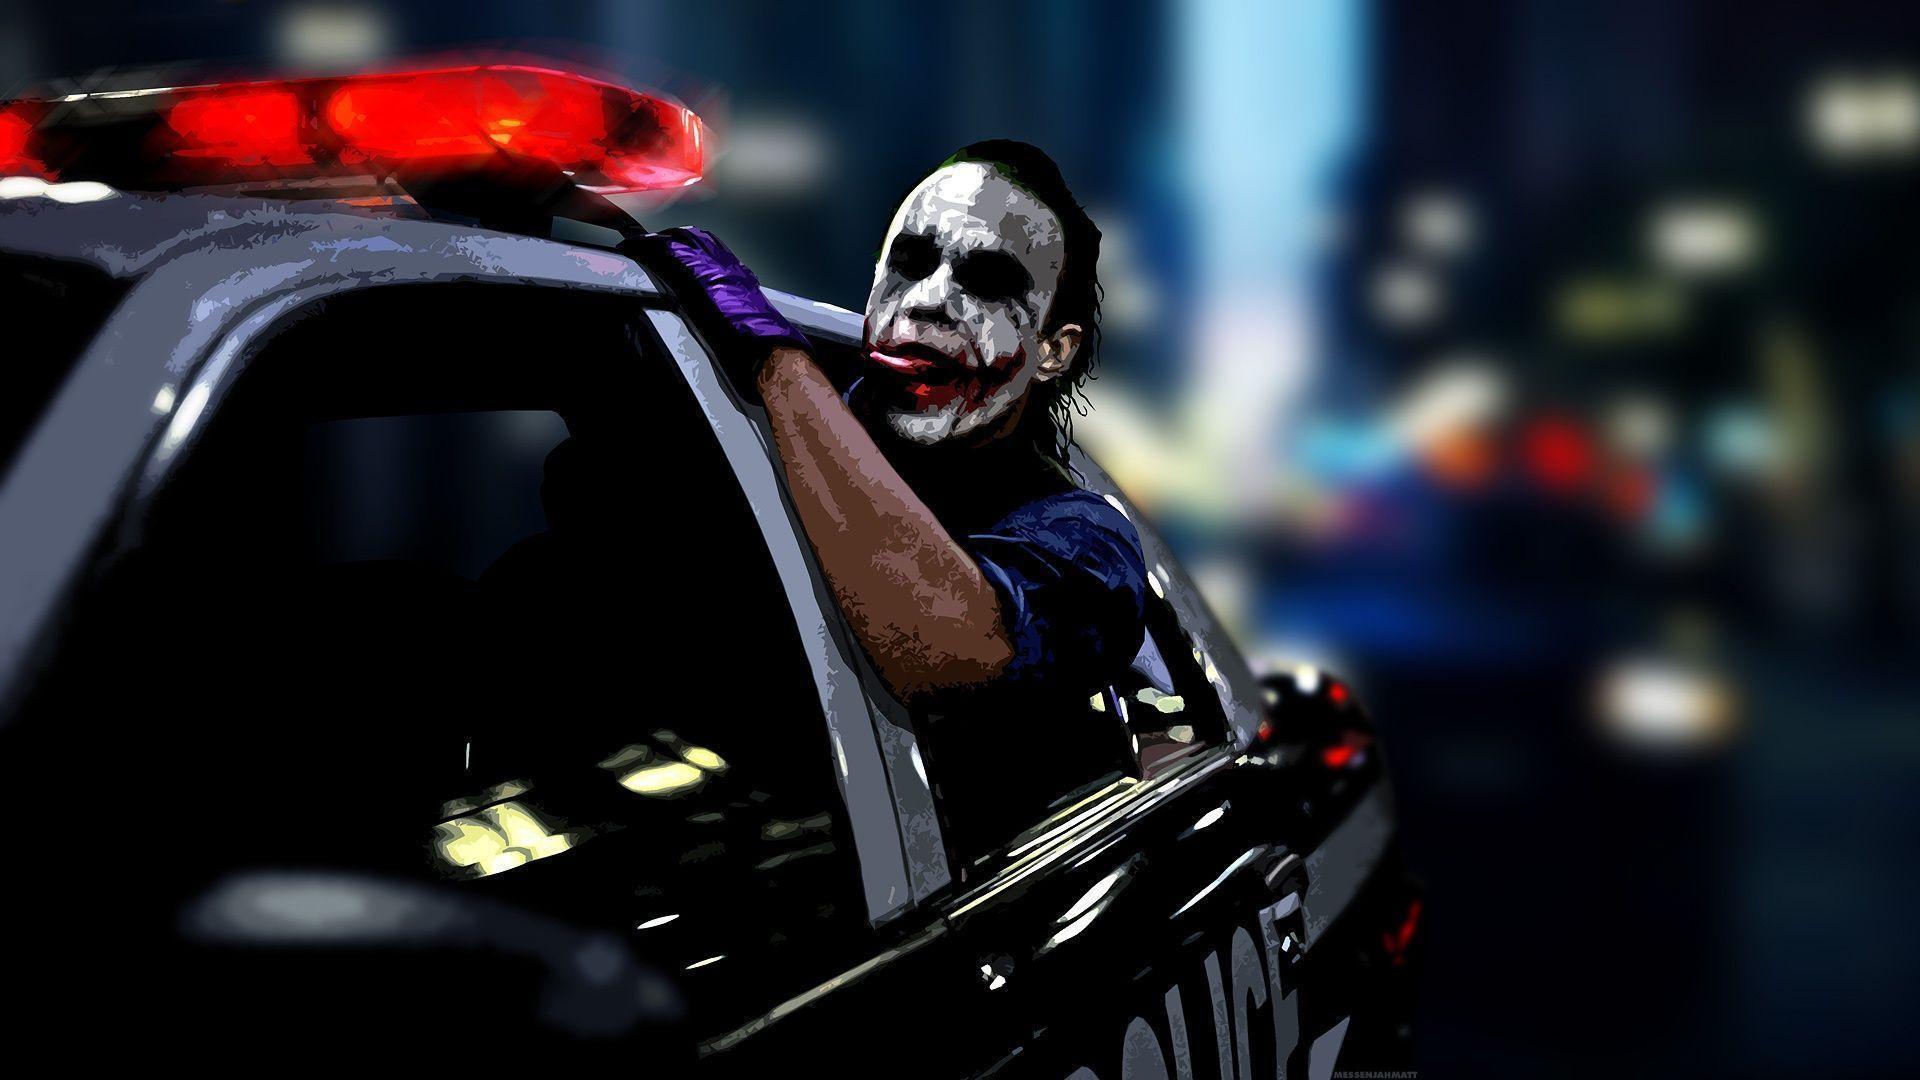 The joker police car Wallpaper